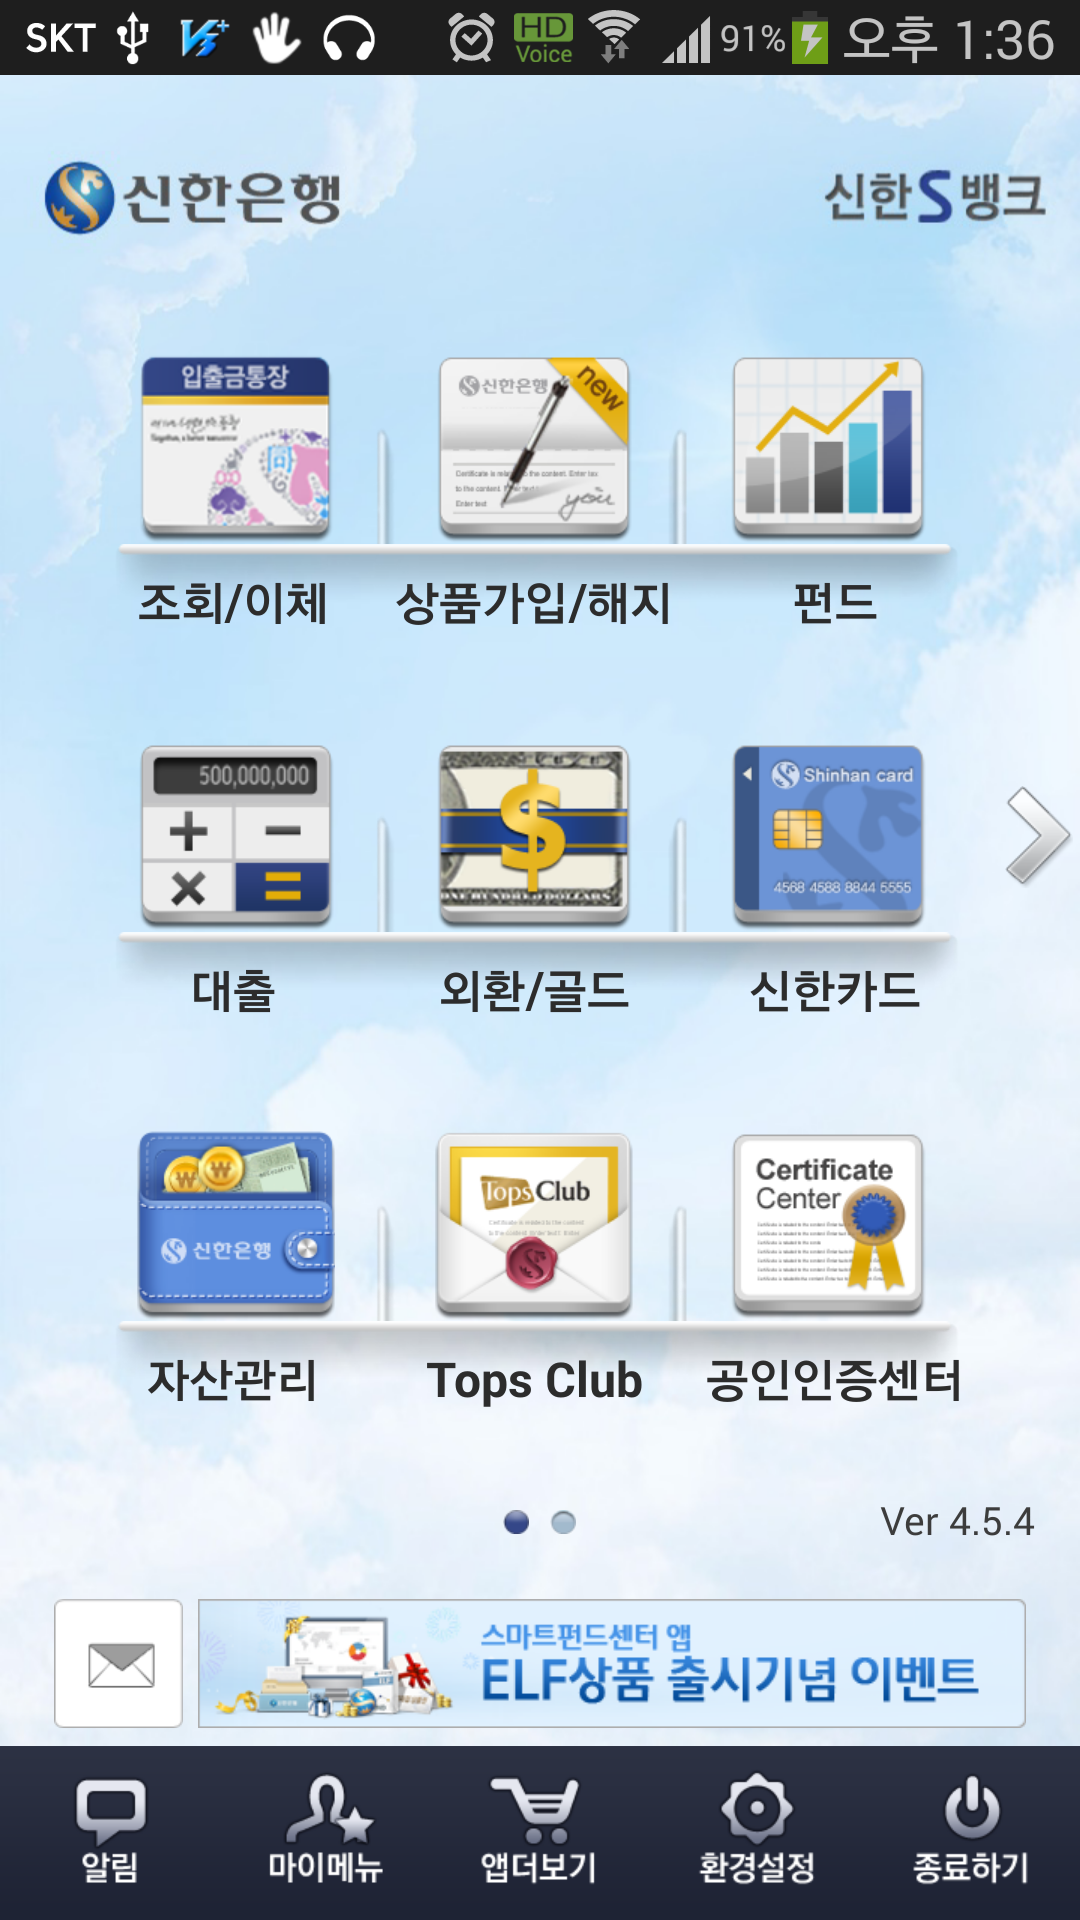 신한은행 S뱅크 ver4.0 (iSO) 스크릿샷